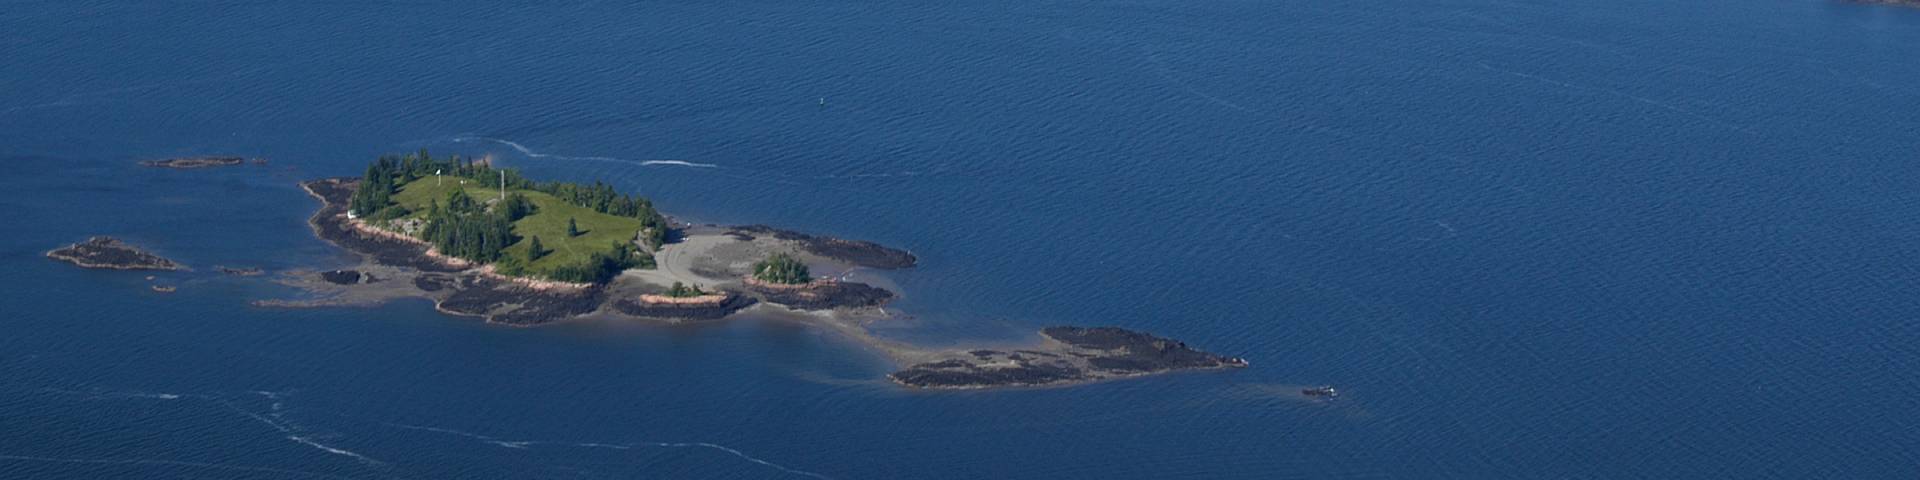 L'île de Sainte-Croix entourée par l'eau